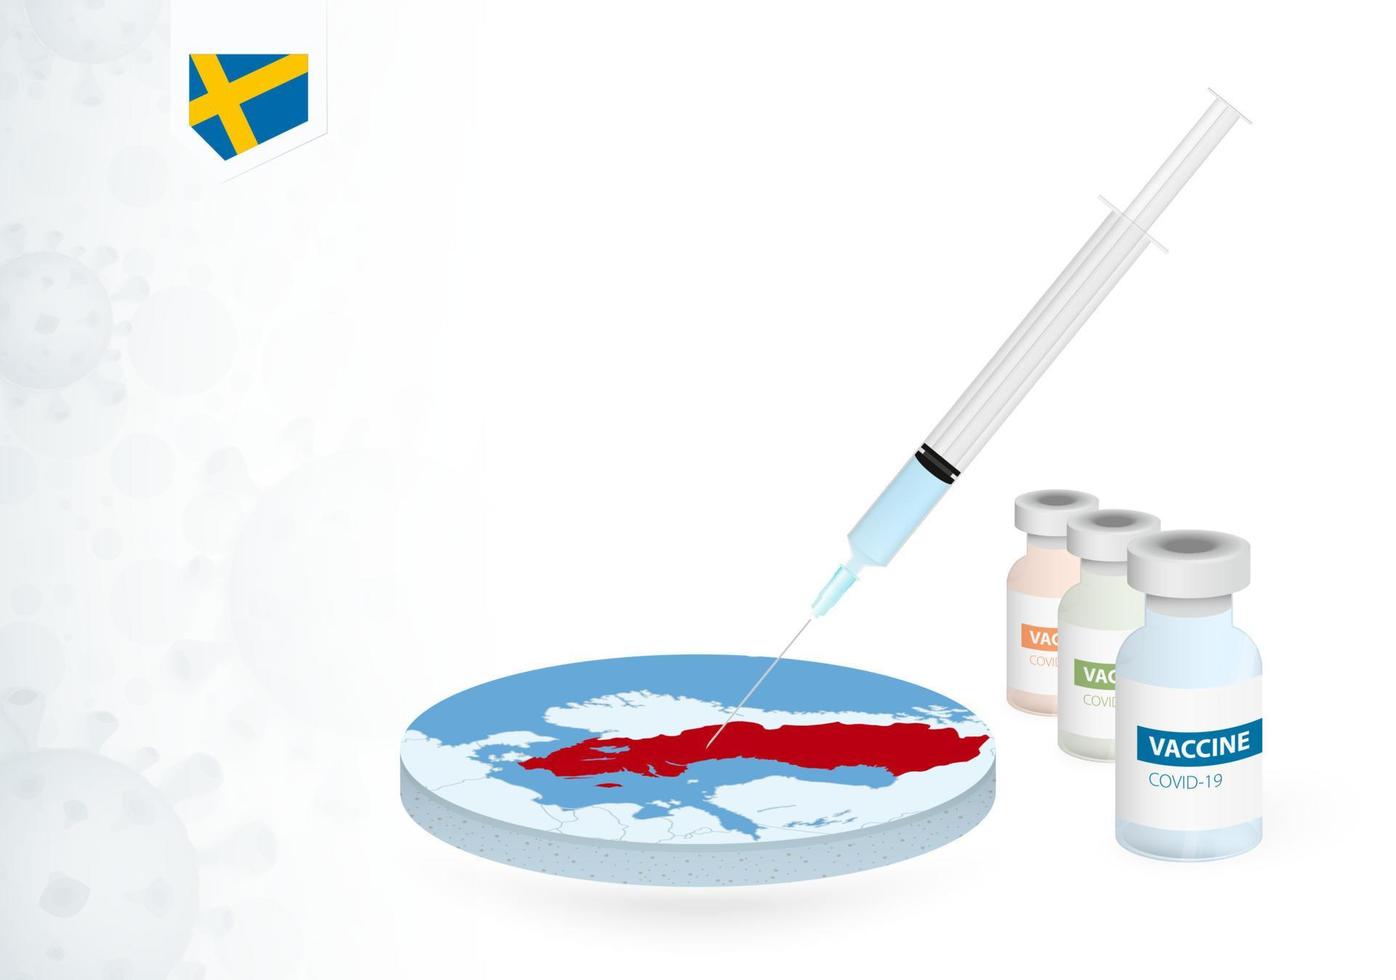 vacinação dentro Suécia com diferente tipo do covid-19 vacina. conceito com a vacina injeção dentro a mapa do Suécia. vetor